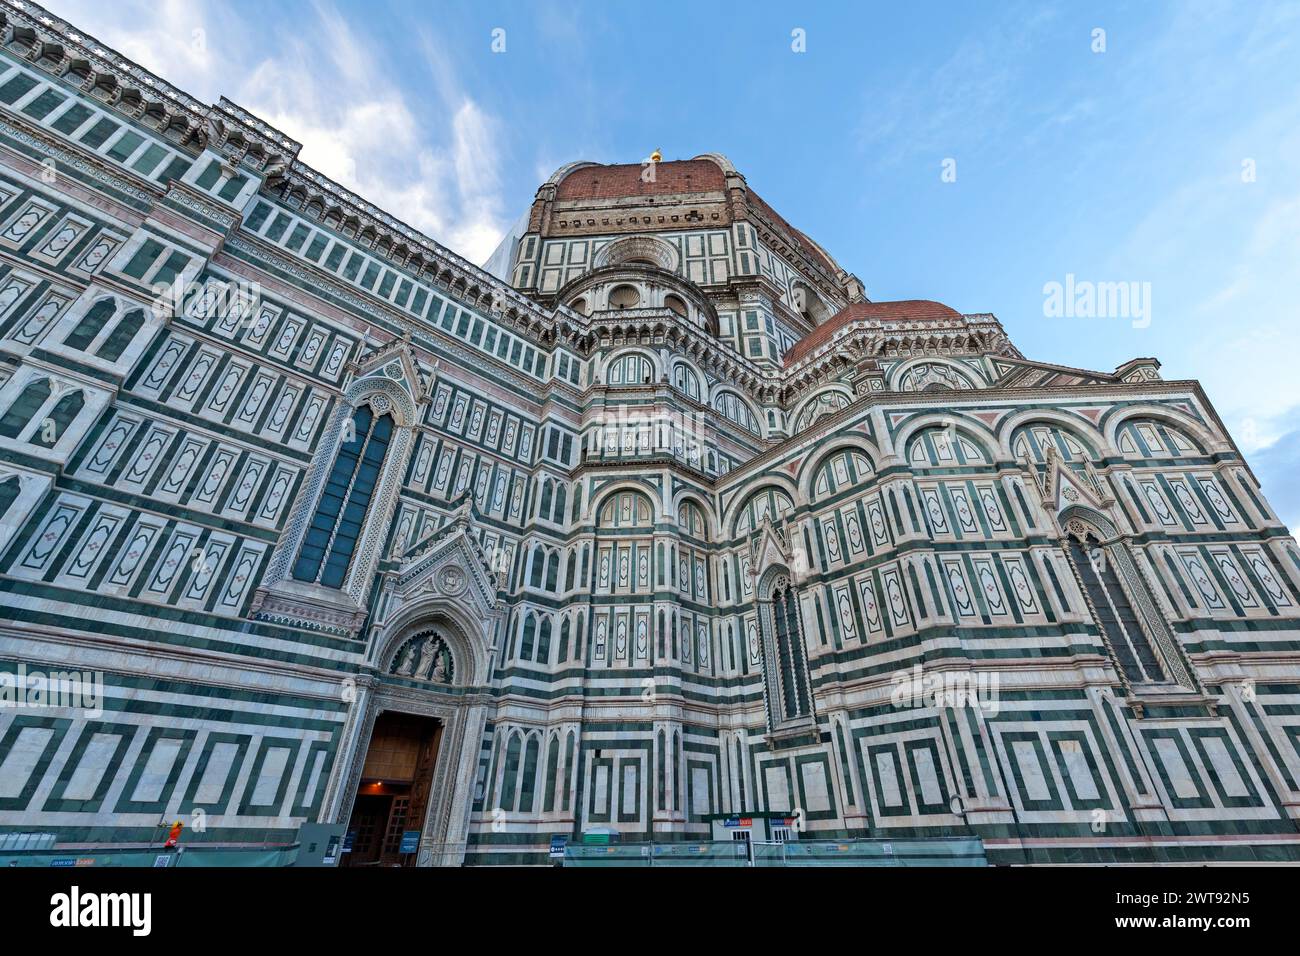 Der berühmte Dom (Kathedrale) von Florenz, Italien, ein Meisterwerk des gotischen Stils, fertiggestellt 1436, mit wunderschöner Dekoration und der herrlichen Kuppel Stockfoto